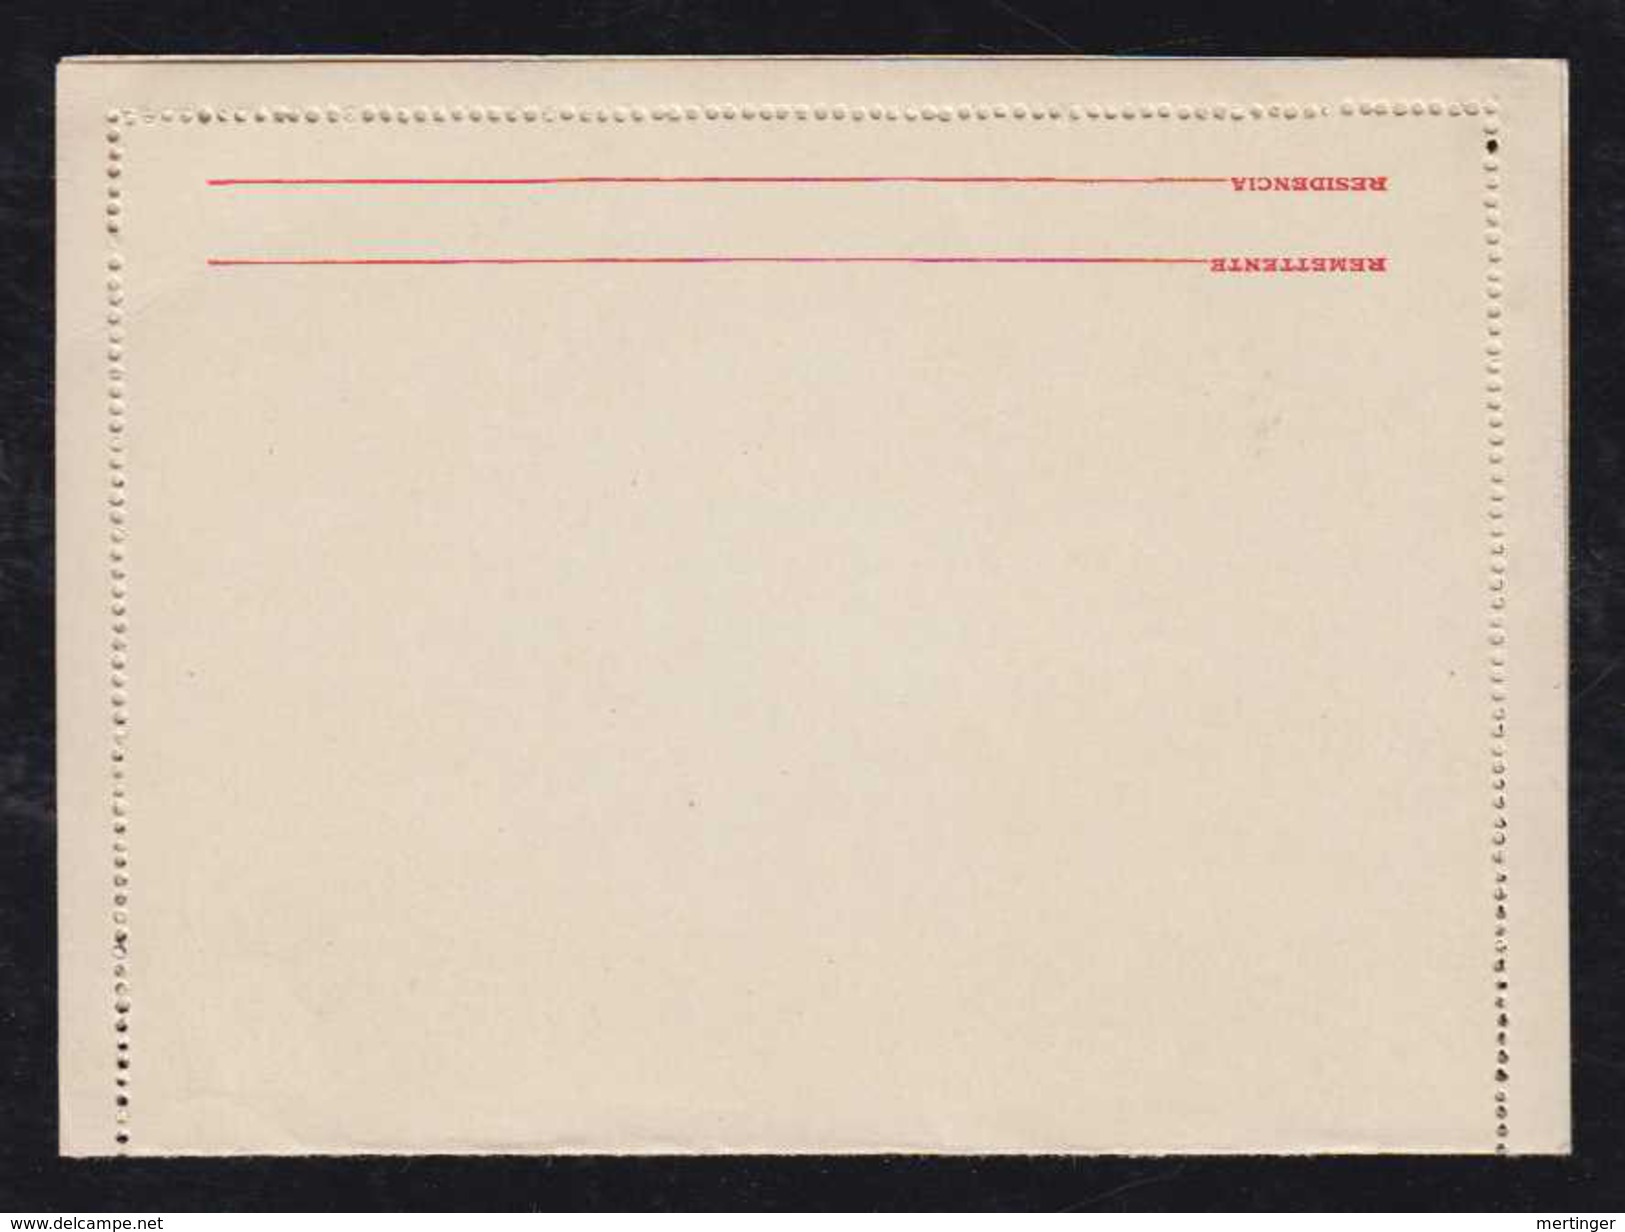 Brazil Brasil 1931 CB 95 200R Overprint Stationery Letter Card MNH - Postal Stationery